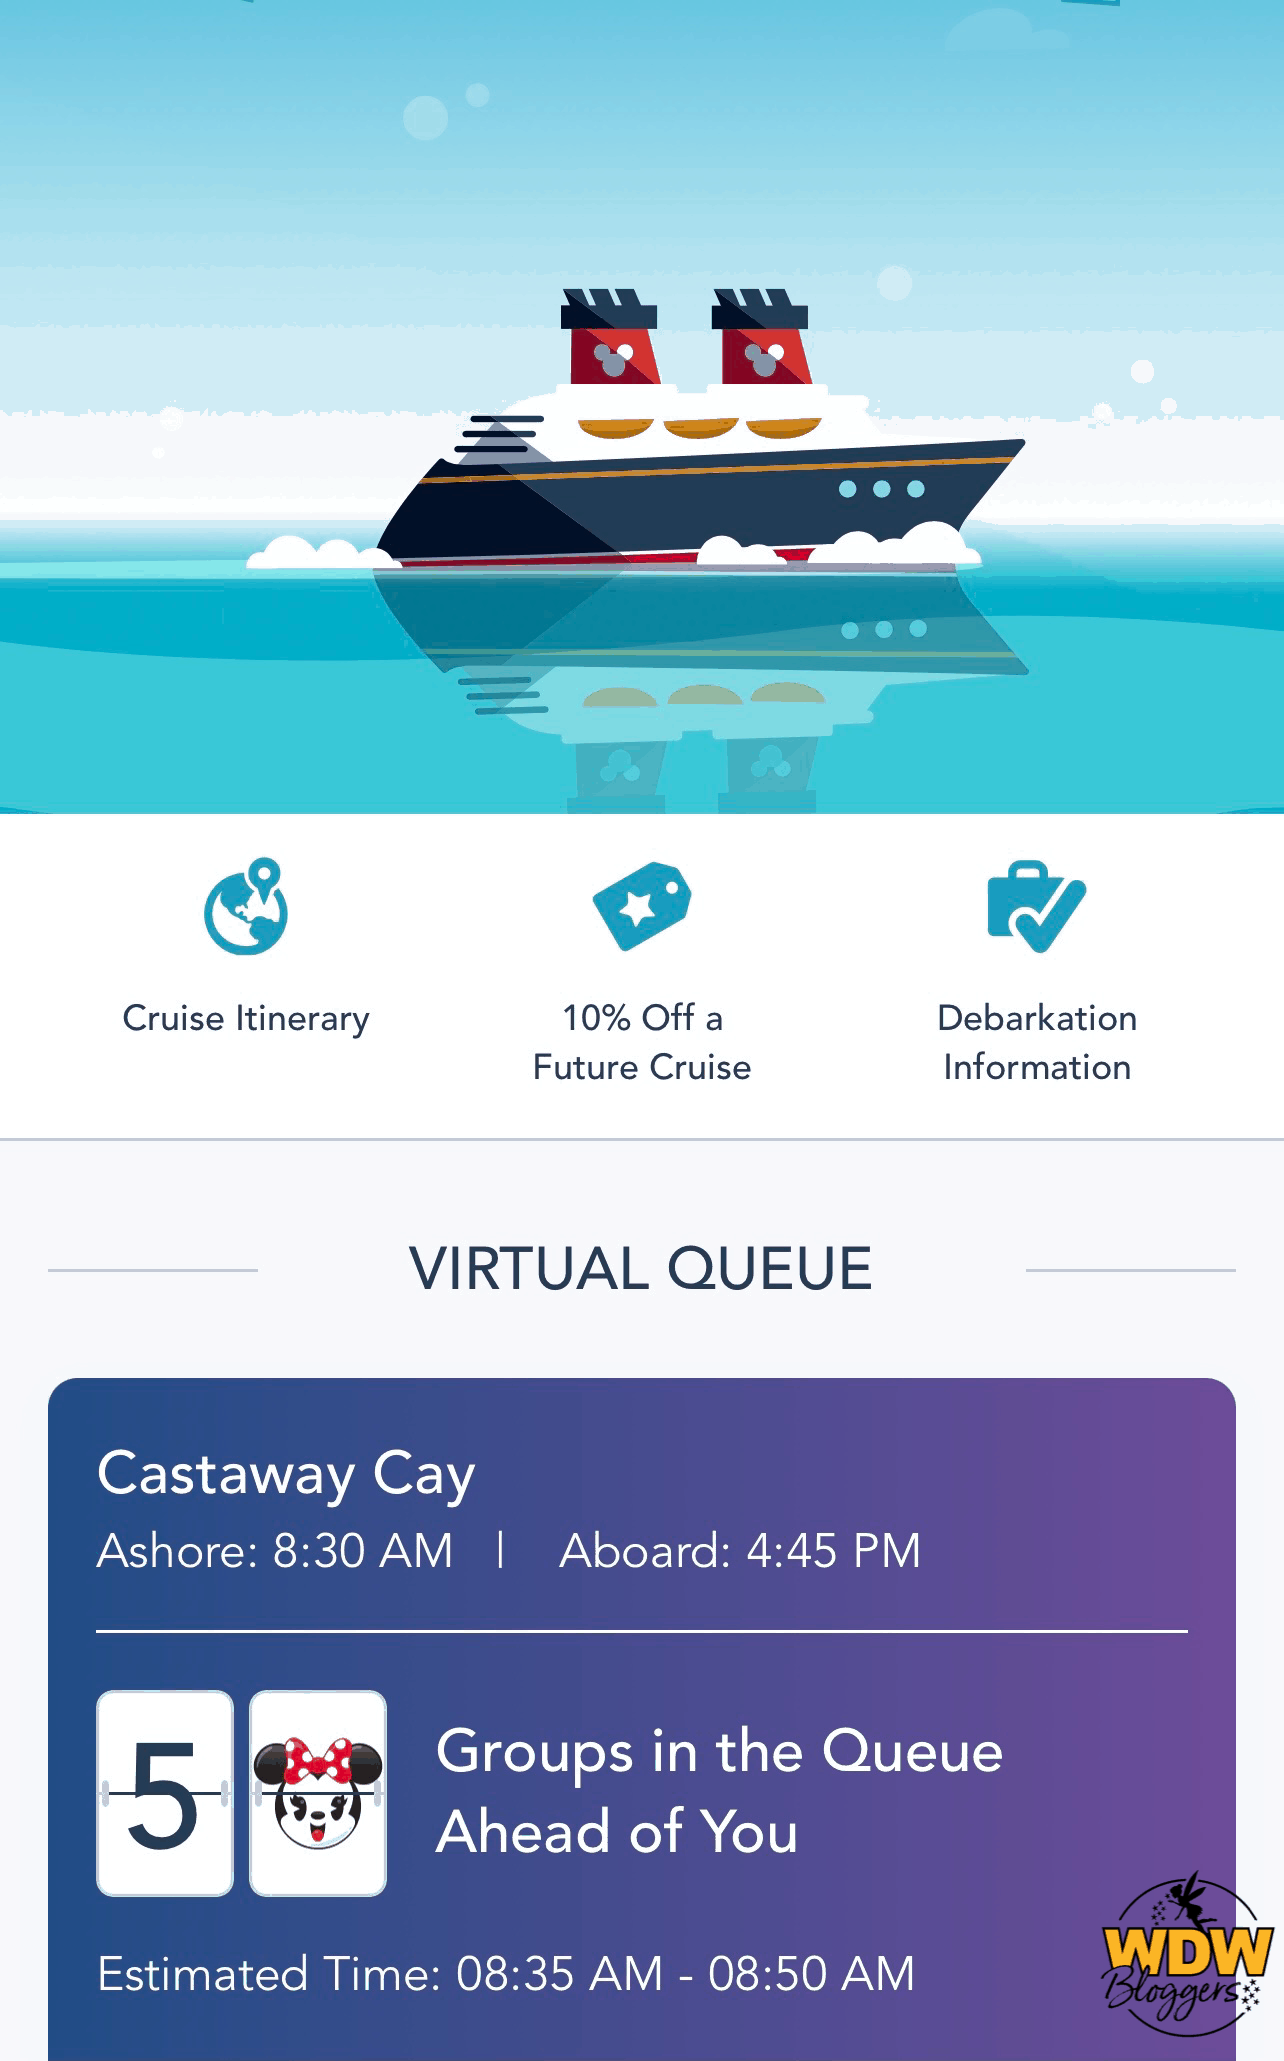 Disney-Cruise-Line-Castaway-Cay-Virtual-Queue-3